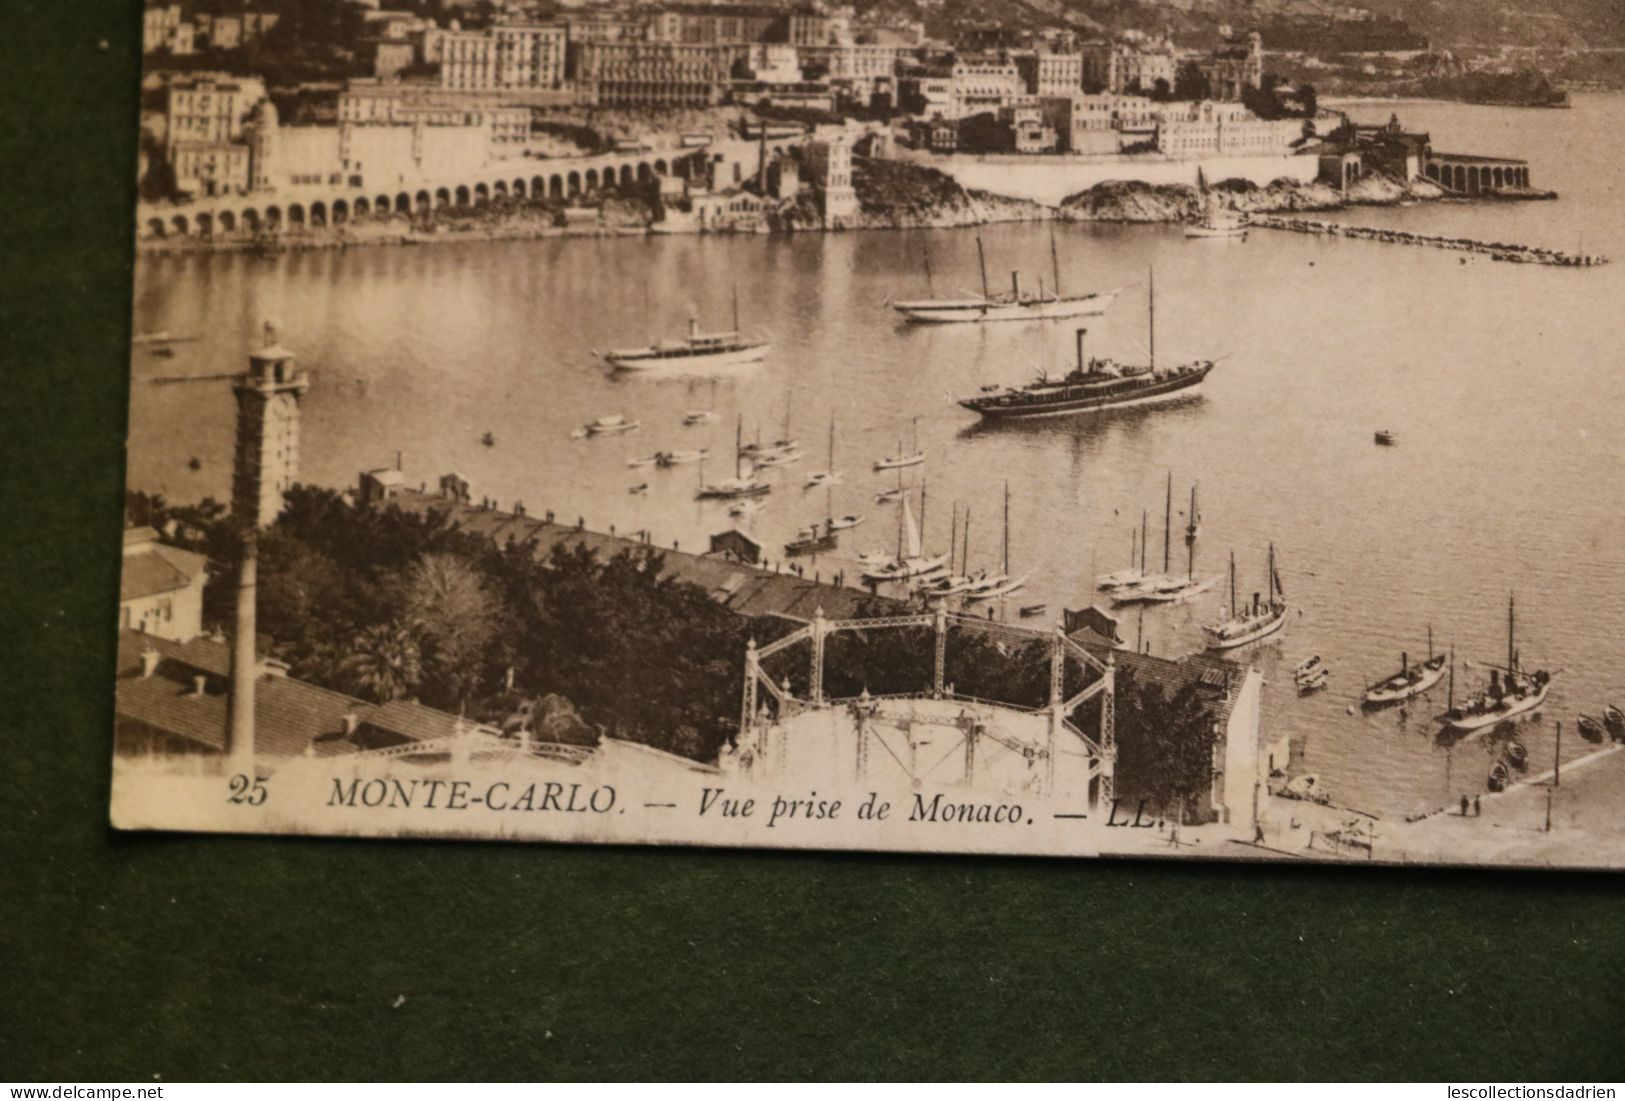 Carte postale Montecarlo - vue prise de Monaco - le port bateaux